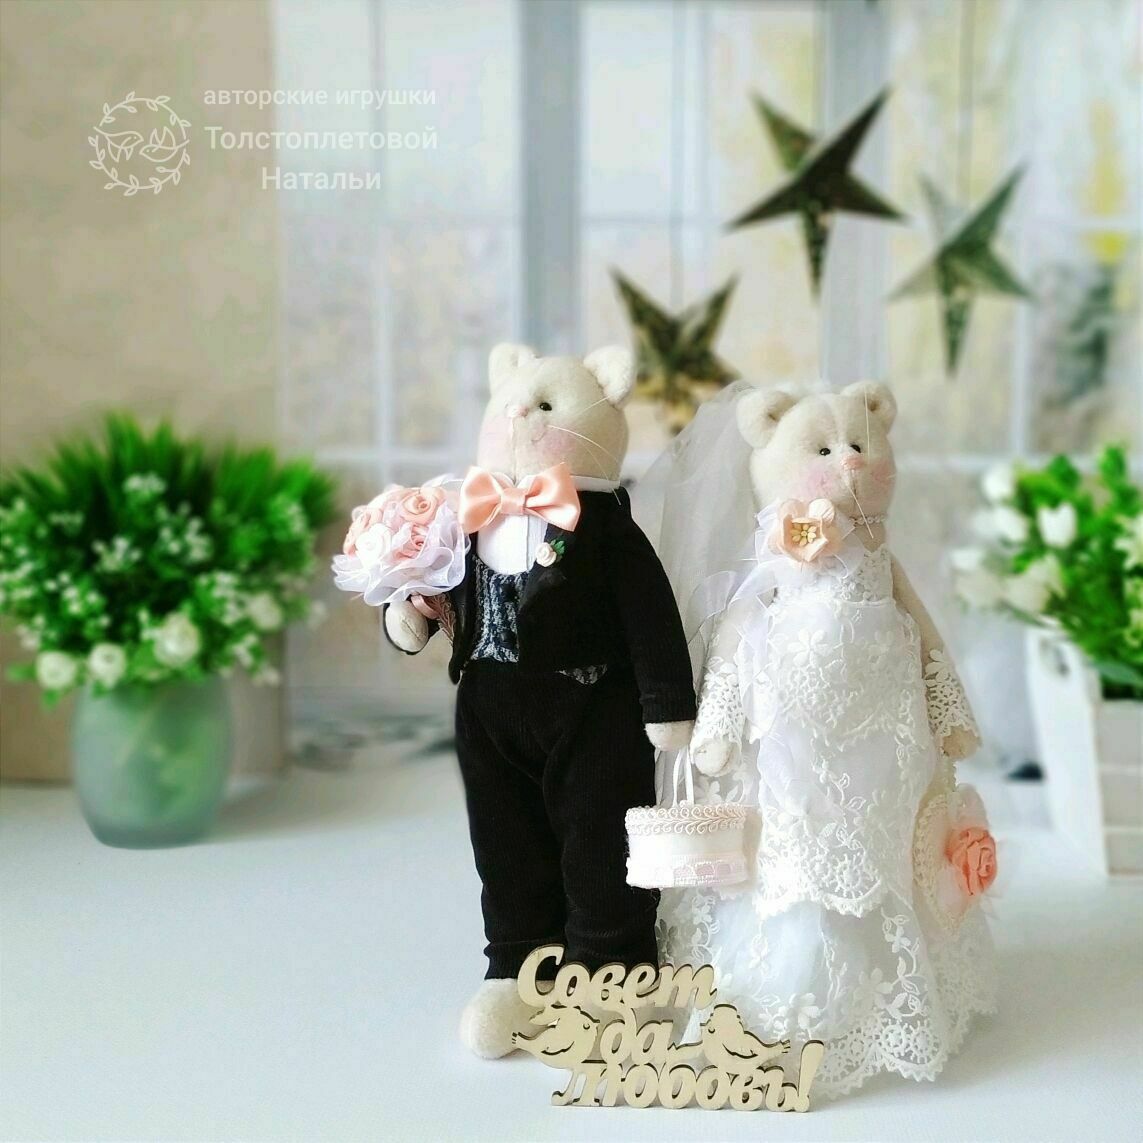 Свадебные тильды - - купить в Украине на garant-artem.ru